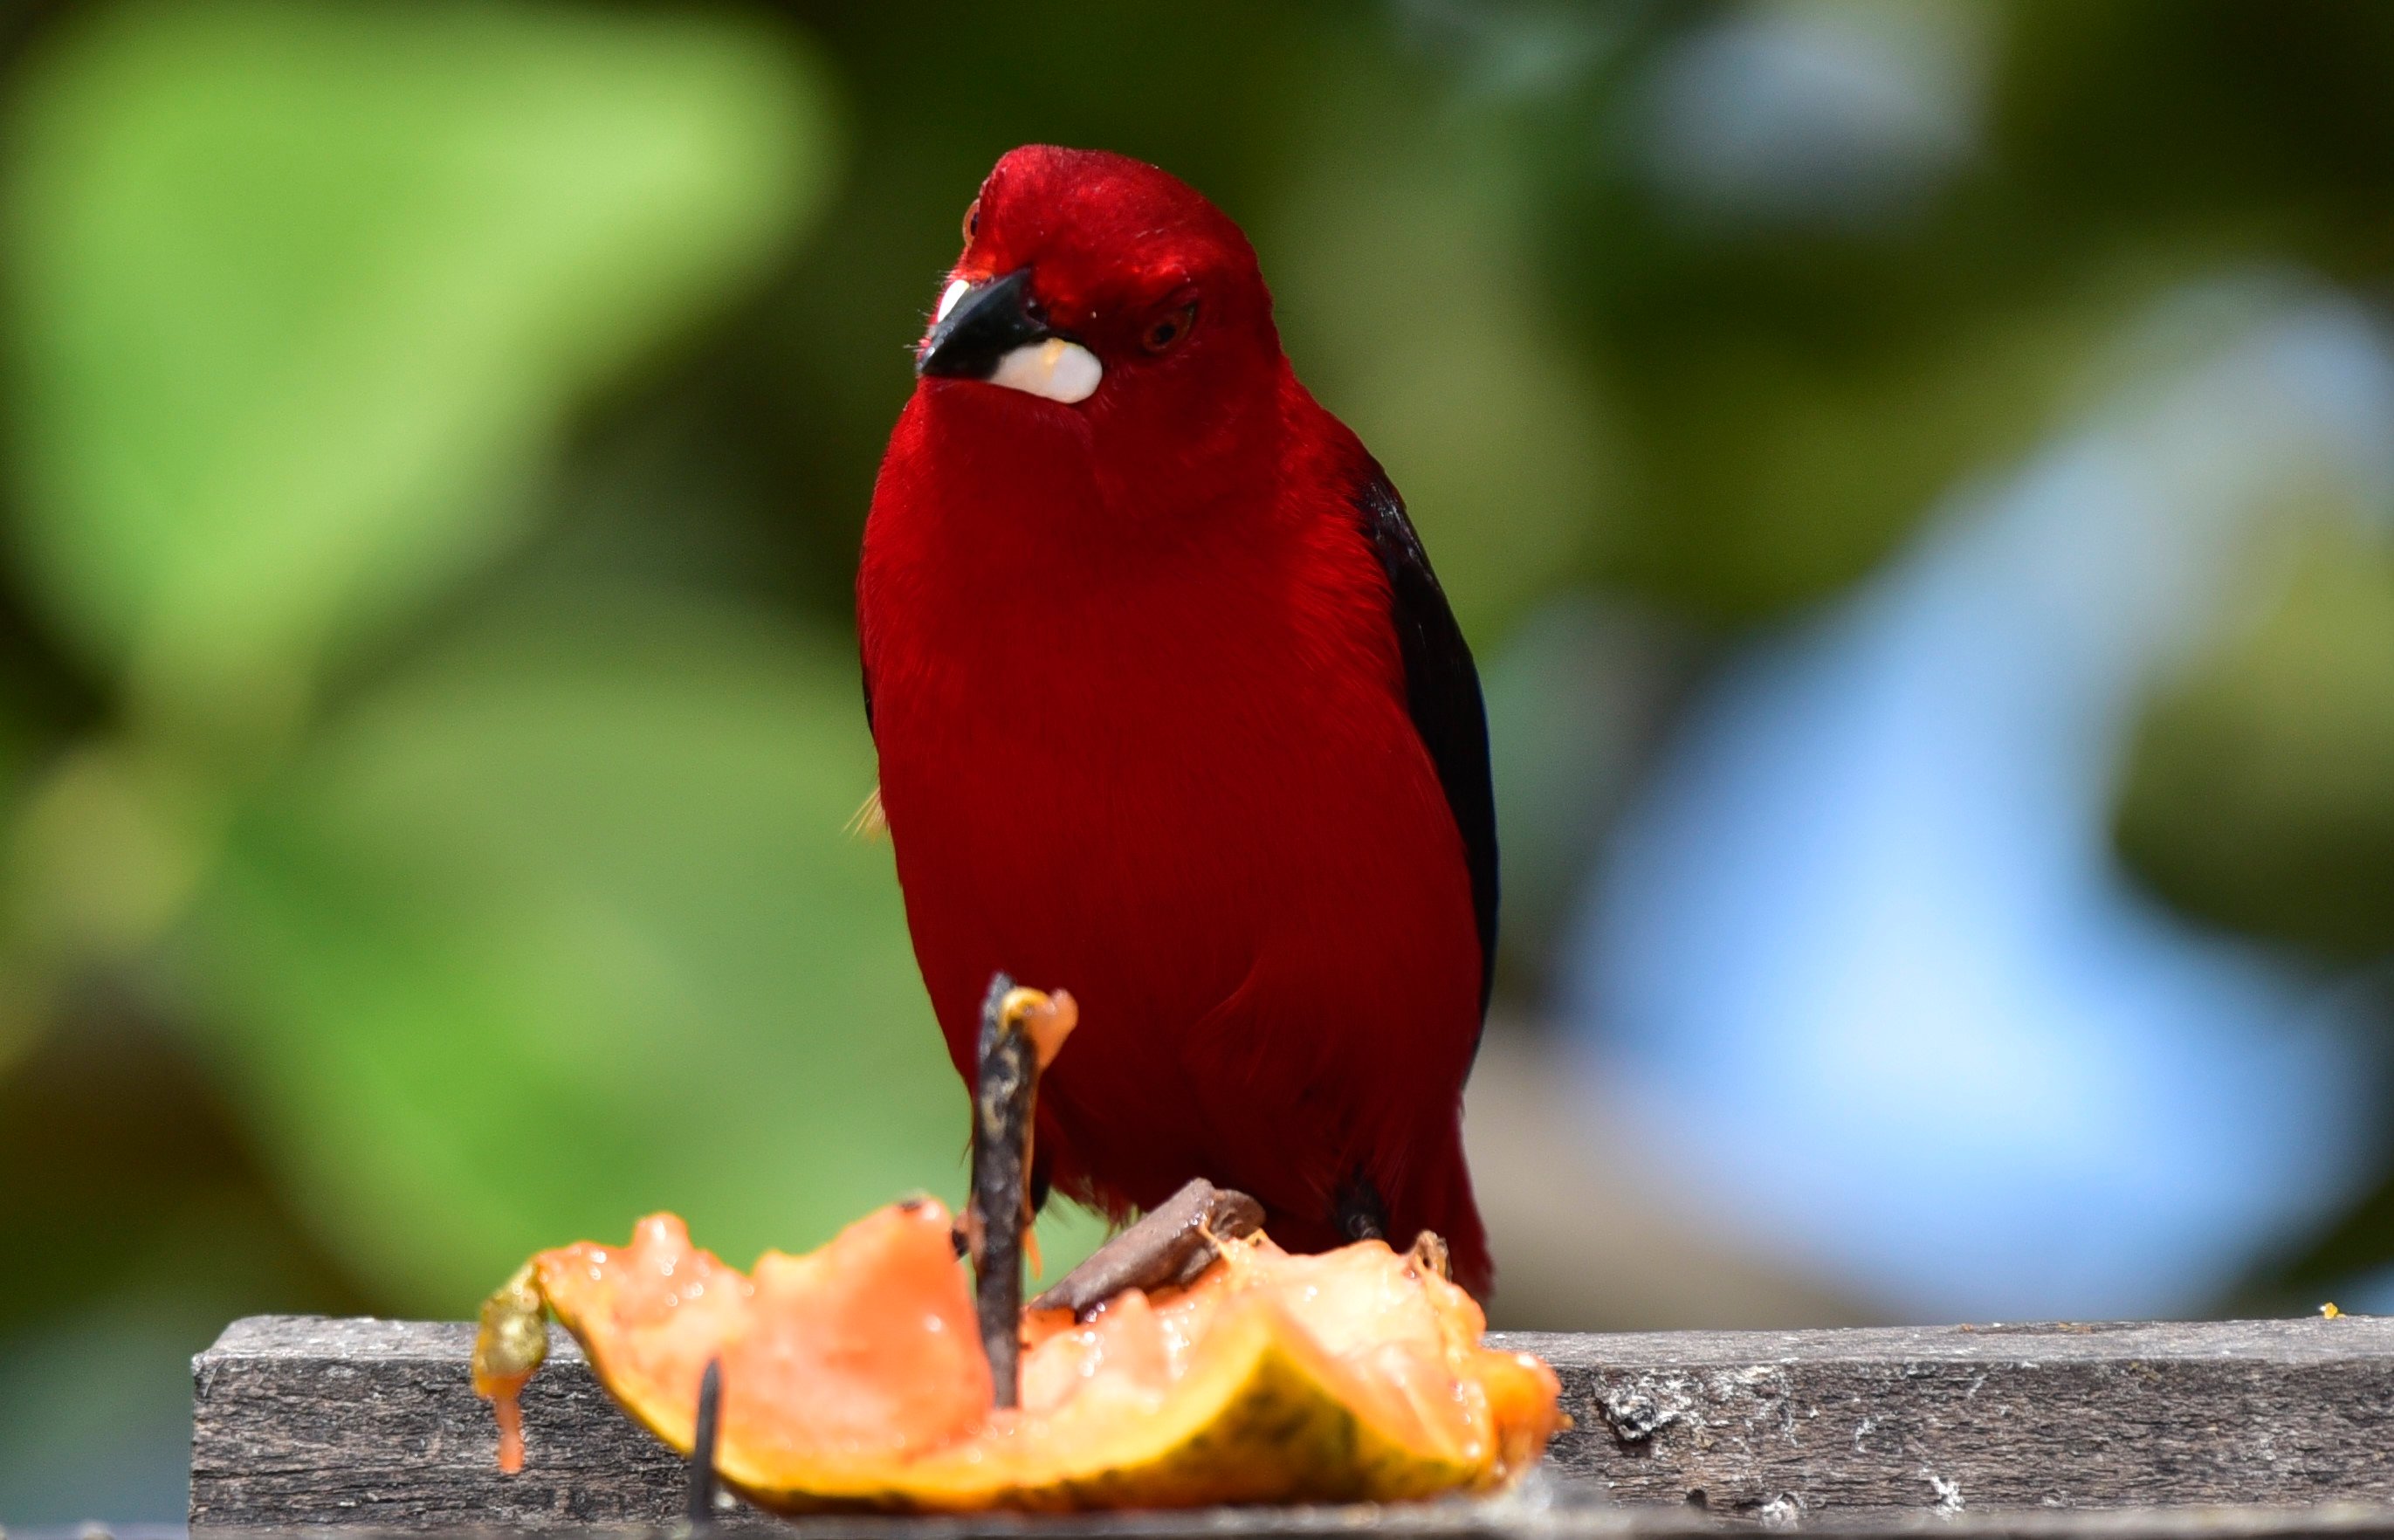 O tiê-sangue é uma ave símbolo da Mata Atlântica, reconhecida pela beleza de sua plumagem vermelha